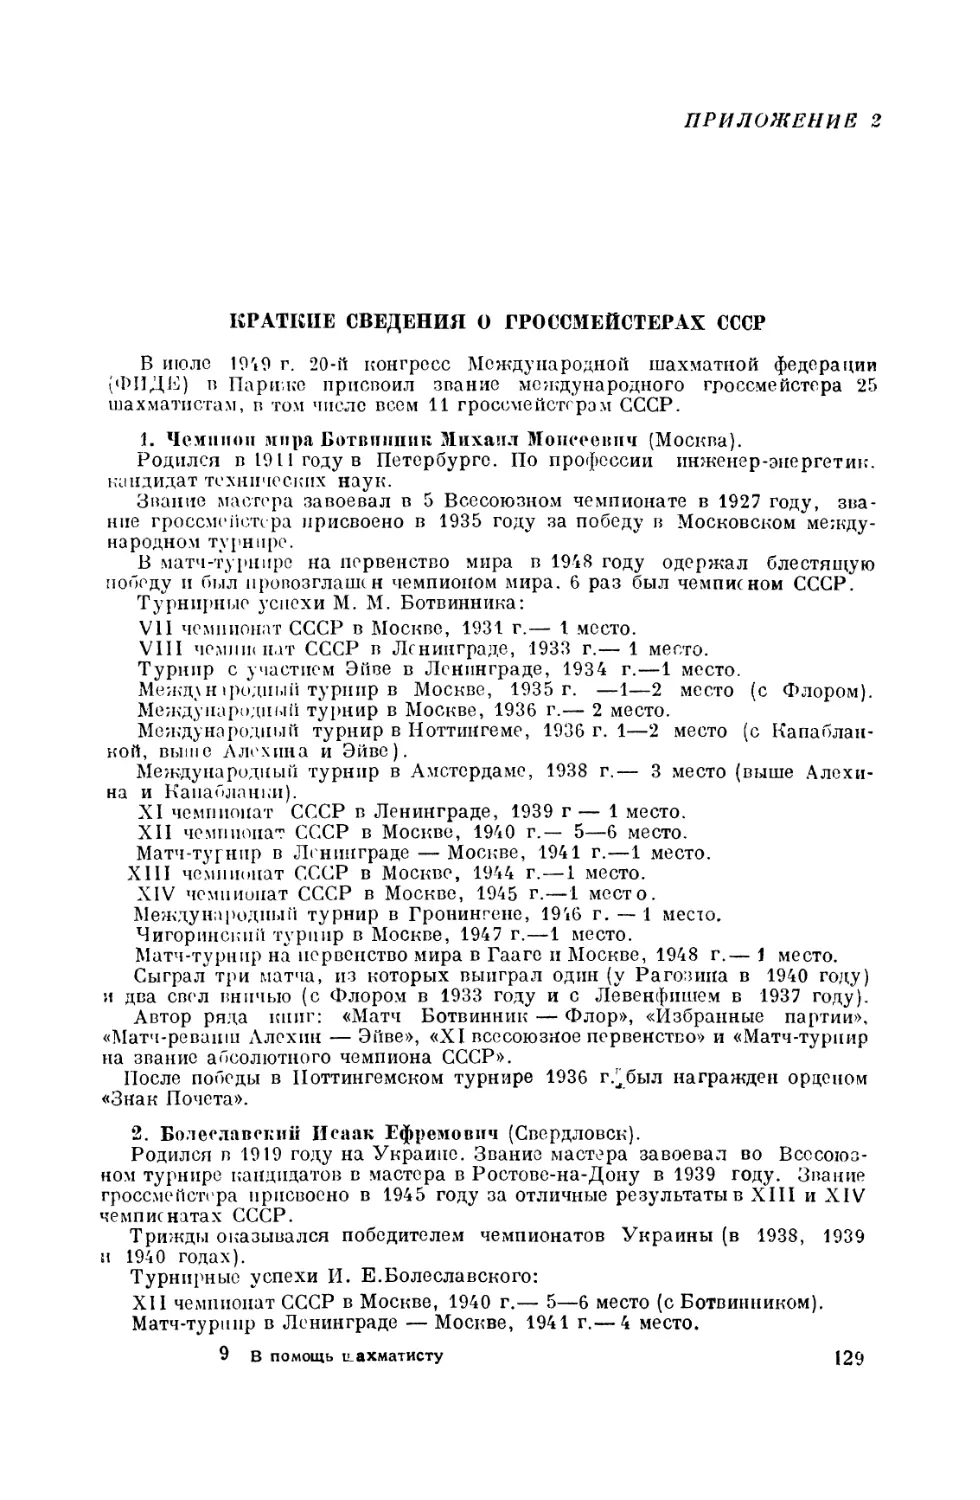 2. Краткие сведения о гроссмейстерах СССР